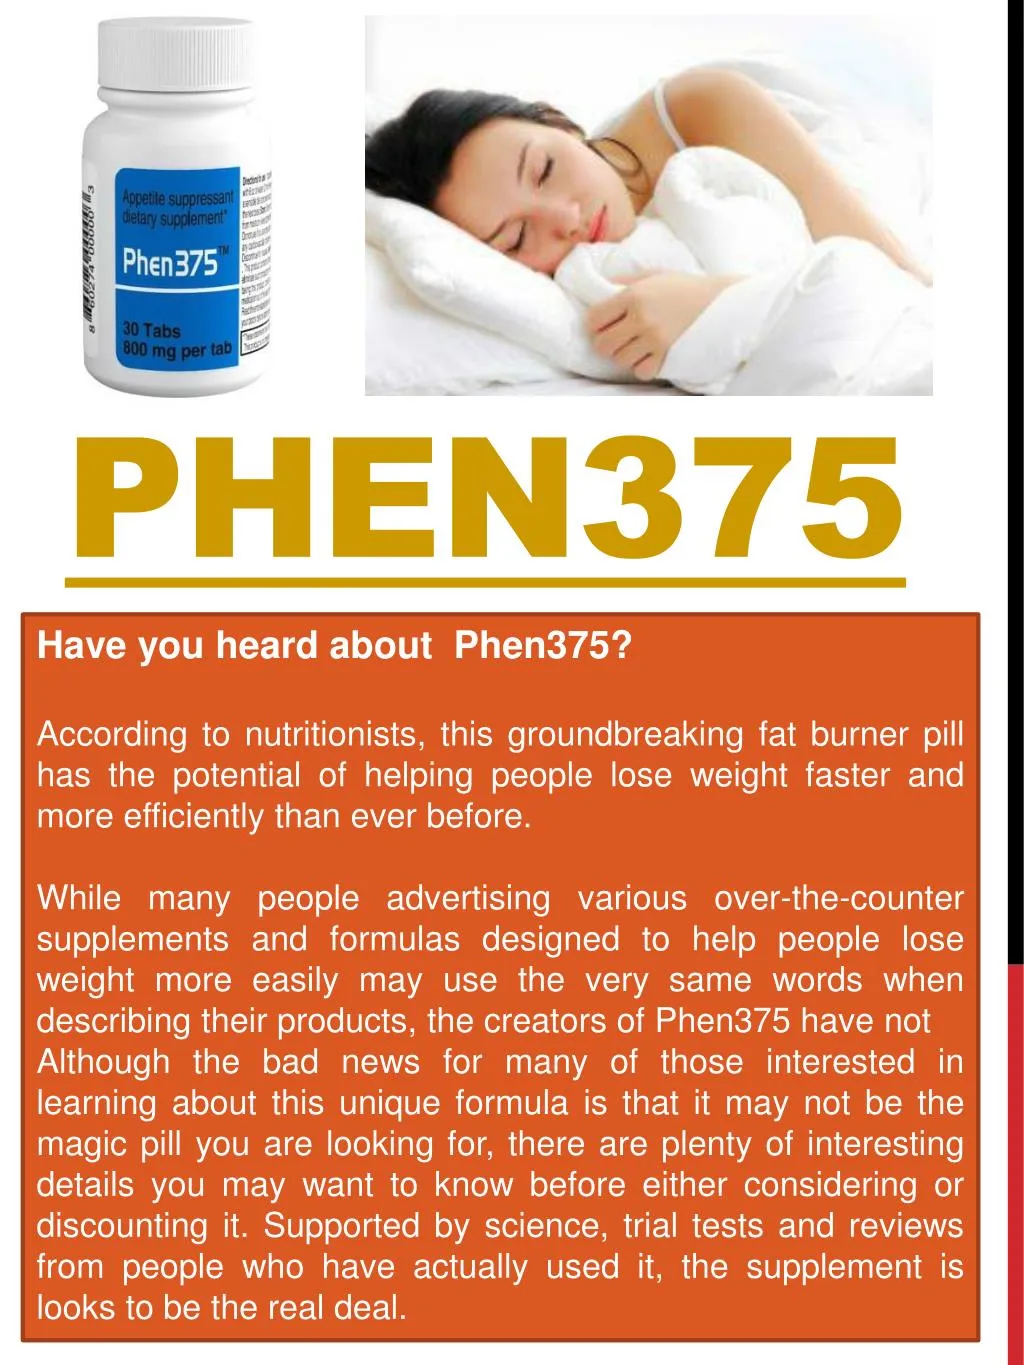 phen375